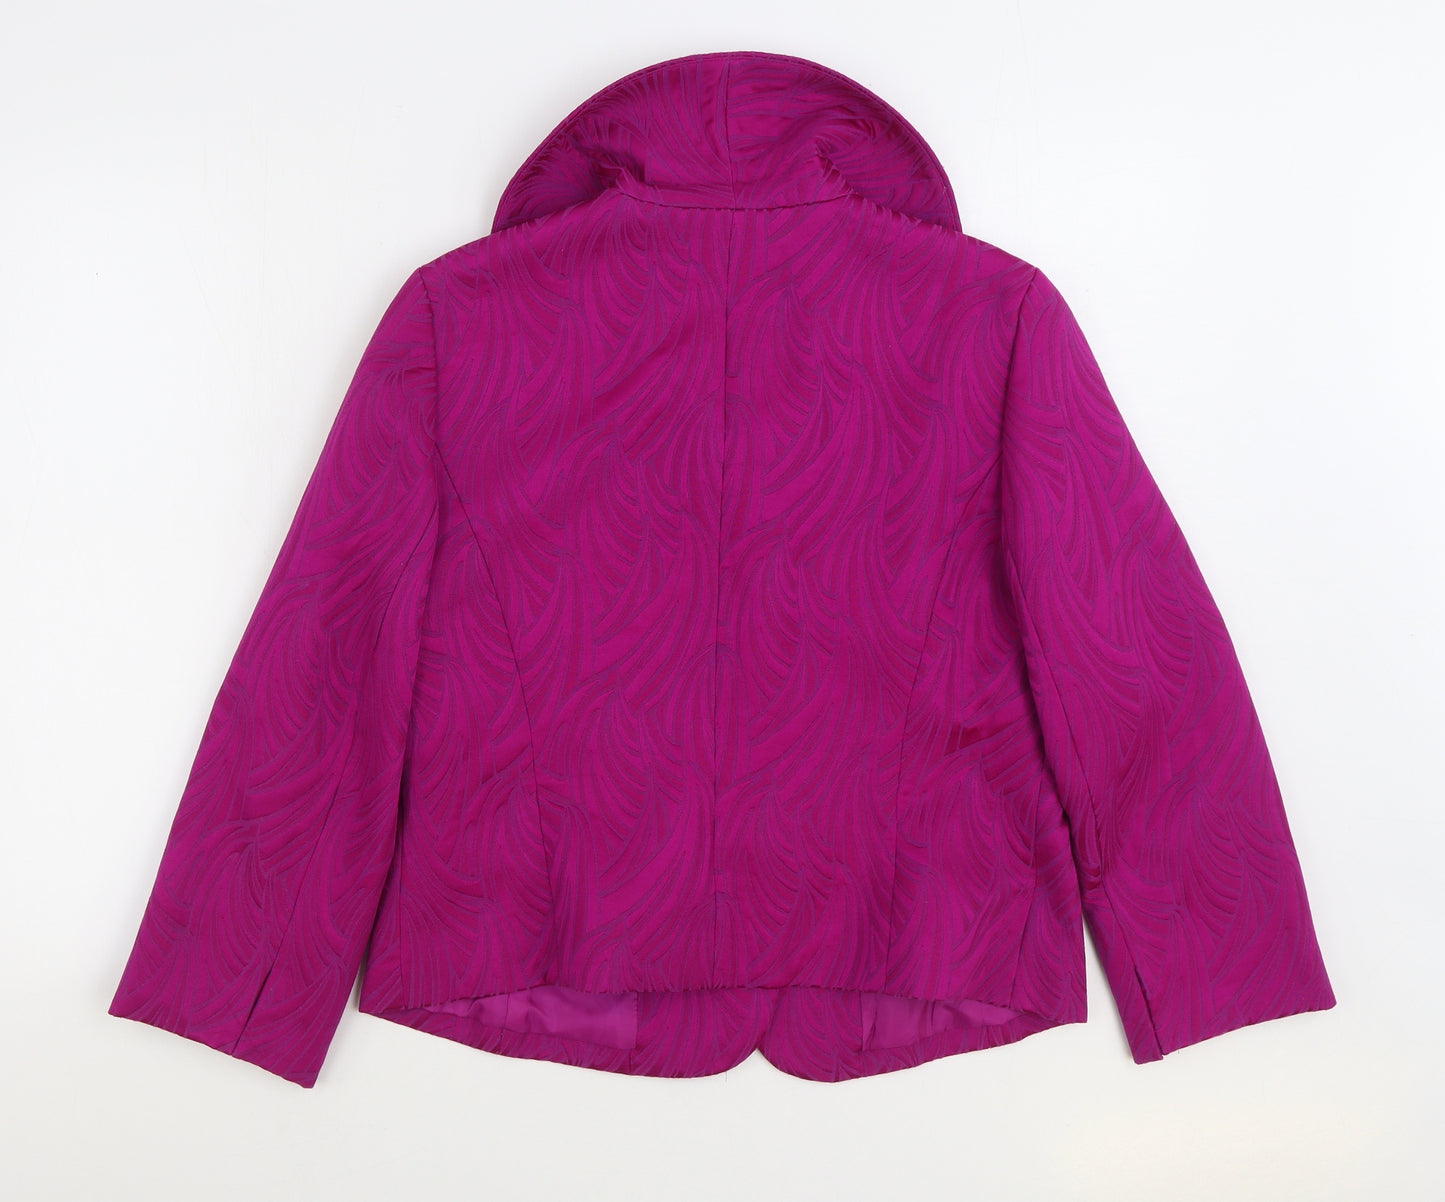 Chaus Womens Pink Geometric Jacket Size 10 Button